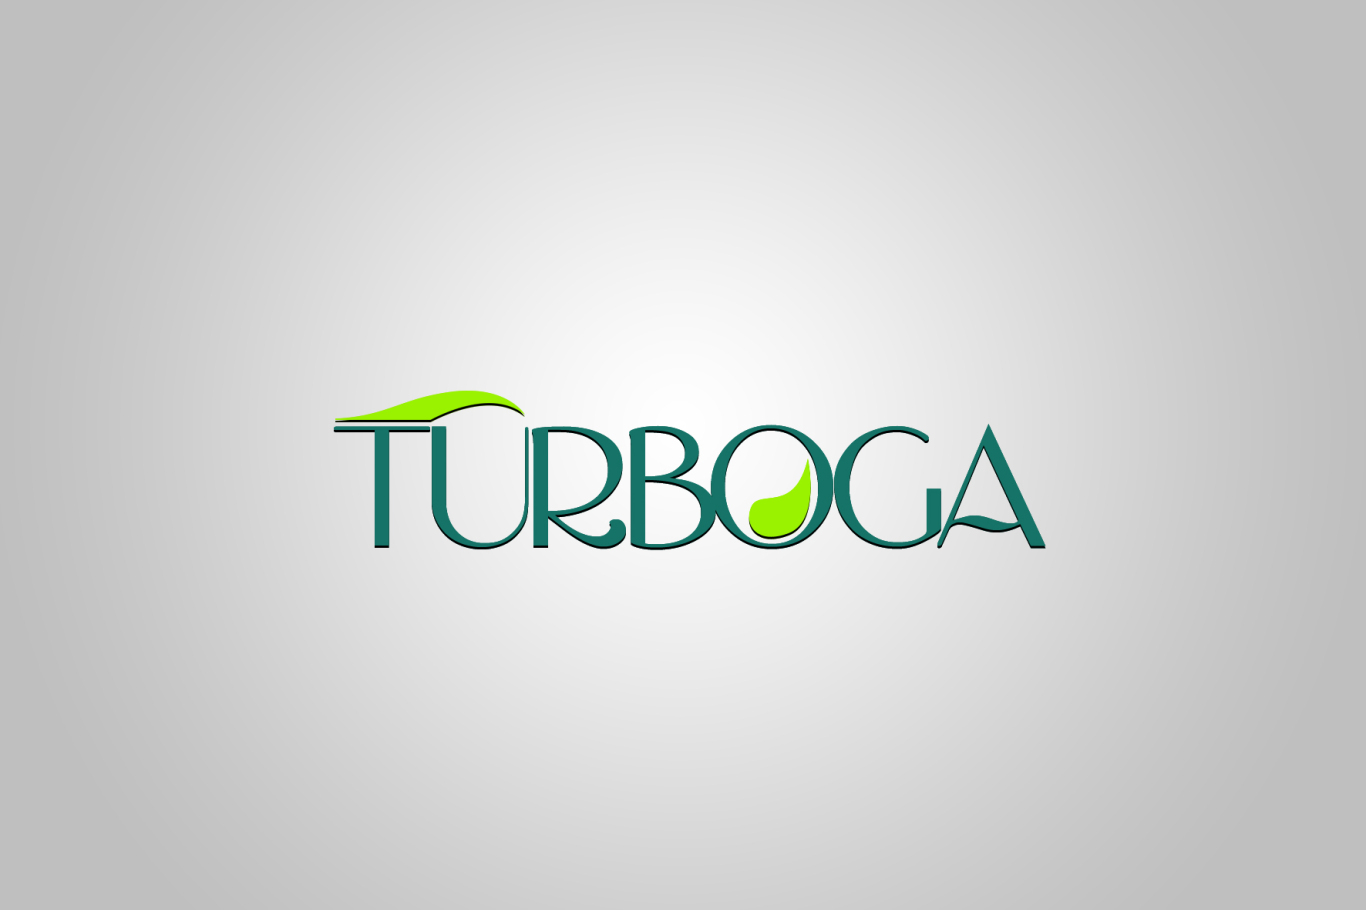 TURBOGA商标设计LOGO设计应用图4